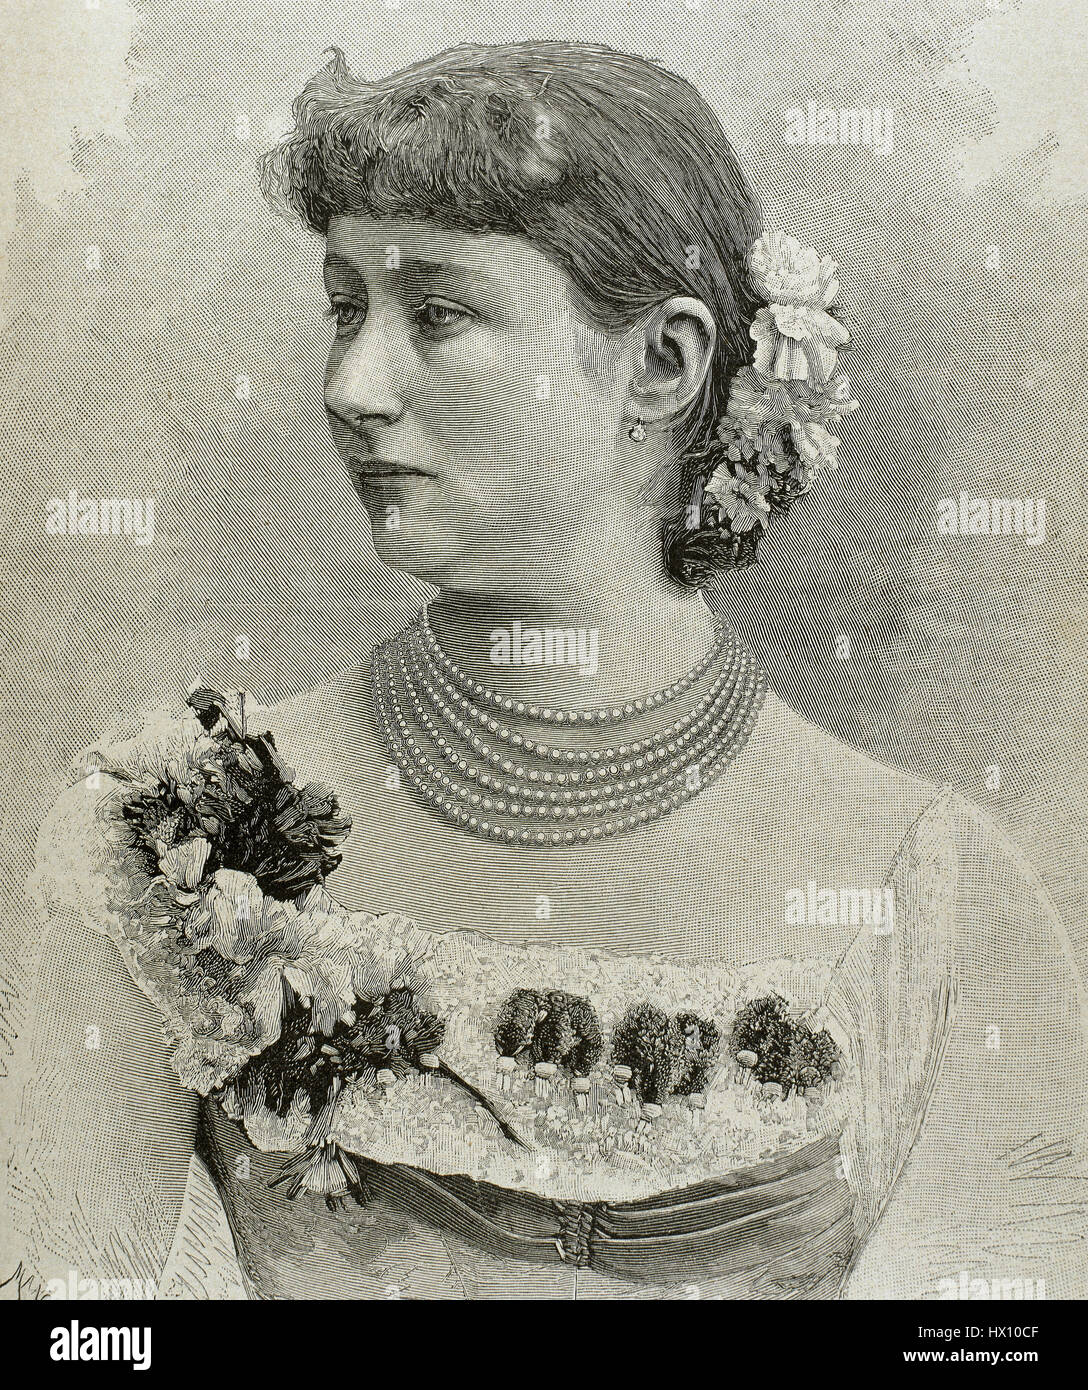 Augusta Victoria de Schleswig-Holstein (1858-1921). La dernière impératrice allemande et reine de Prusse comme la première épouse de l'empereur allemand Guillaume II (1859-1941). Portrait. Gravure par Mancastropa. Banque D'Images